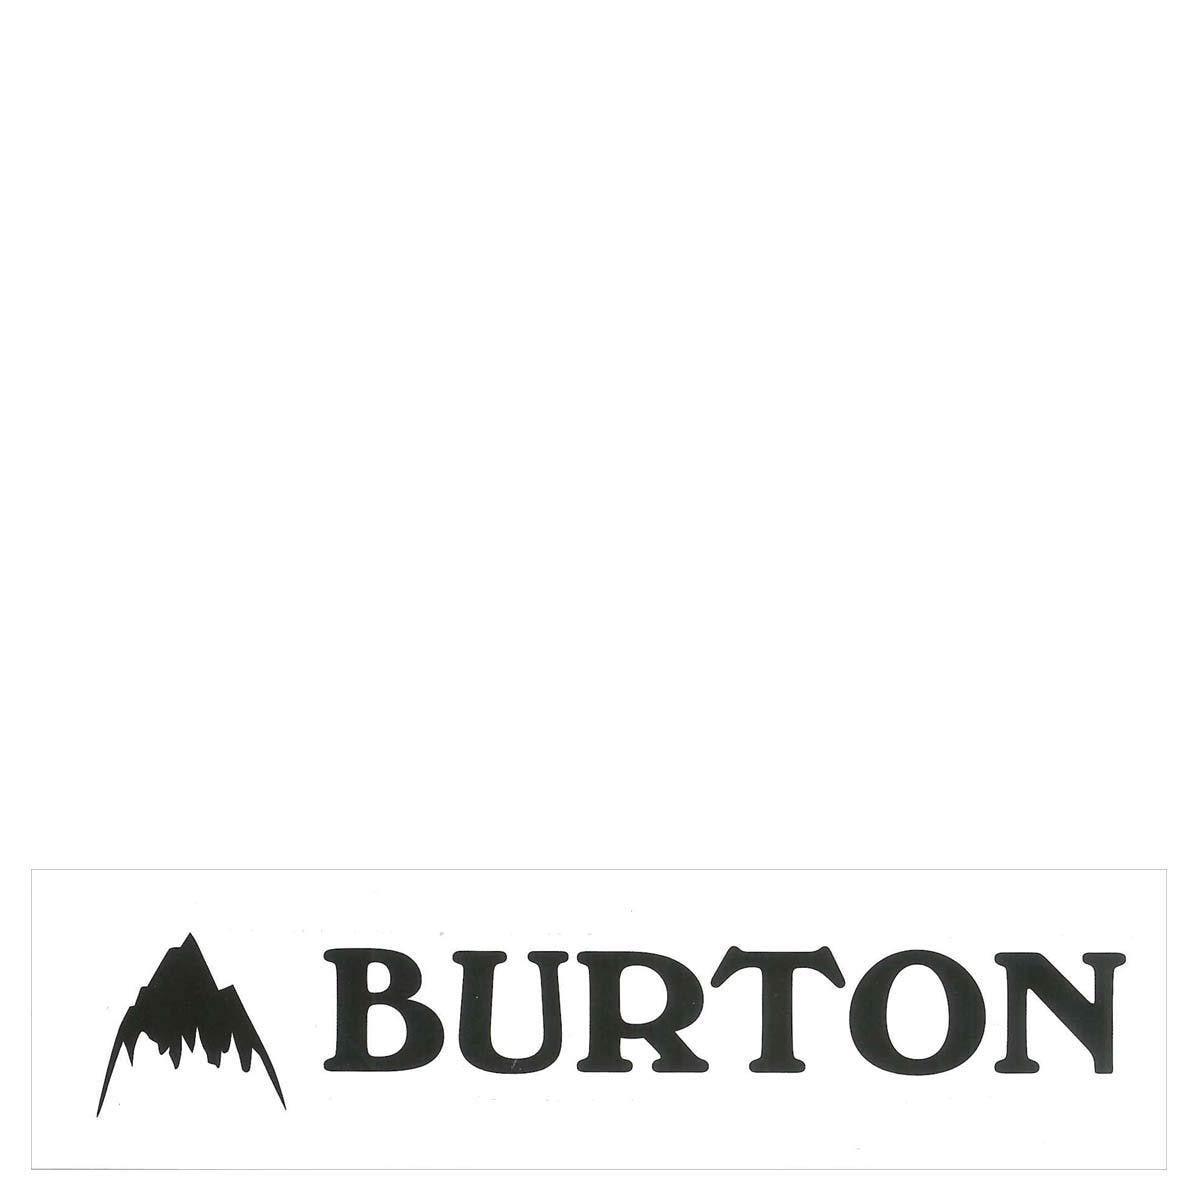 OG Logo - Burton OG Logo Sticker 25mm x 145mm.co.uk